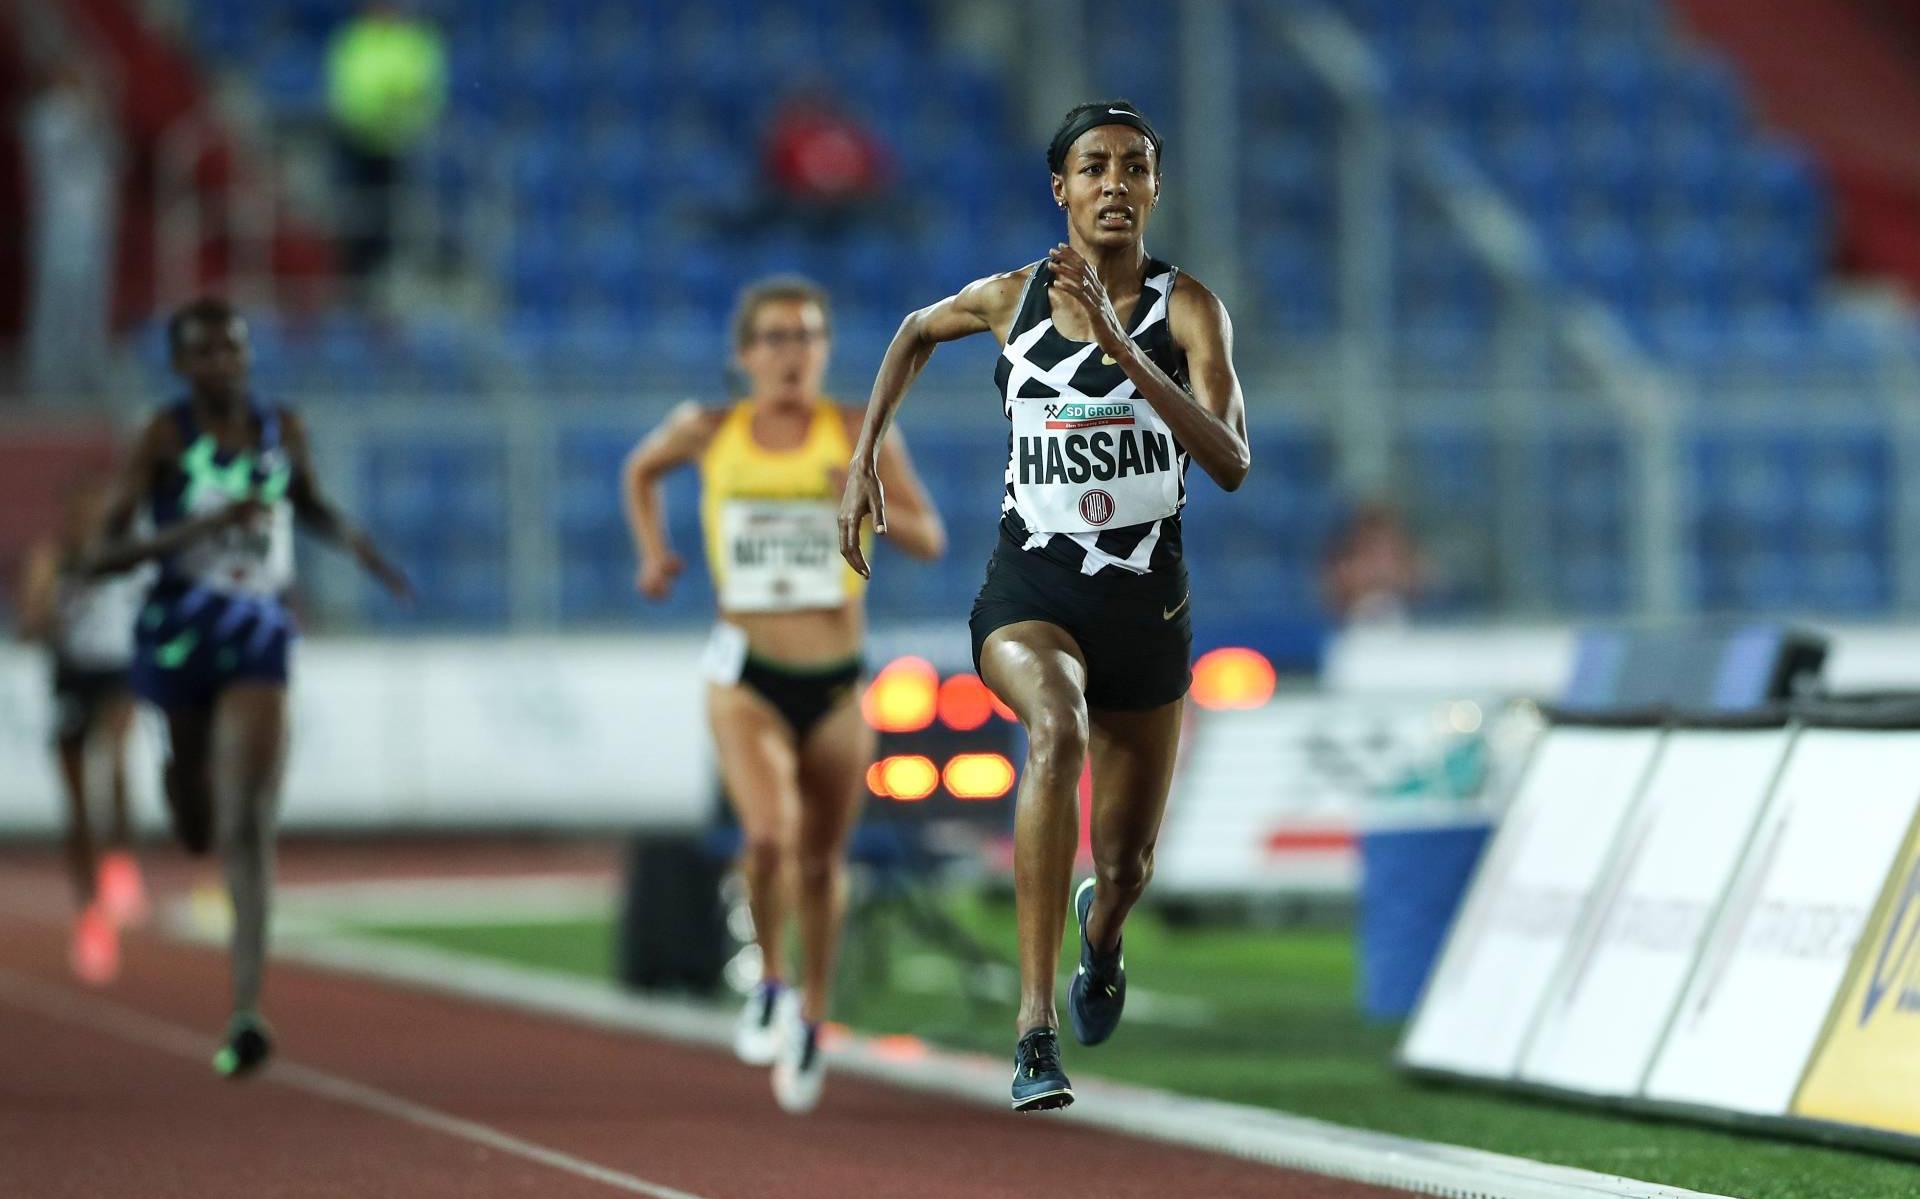 Atlete Hassan wint 5000 meter in Ostrava